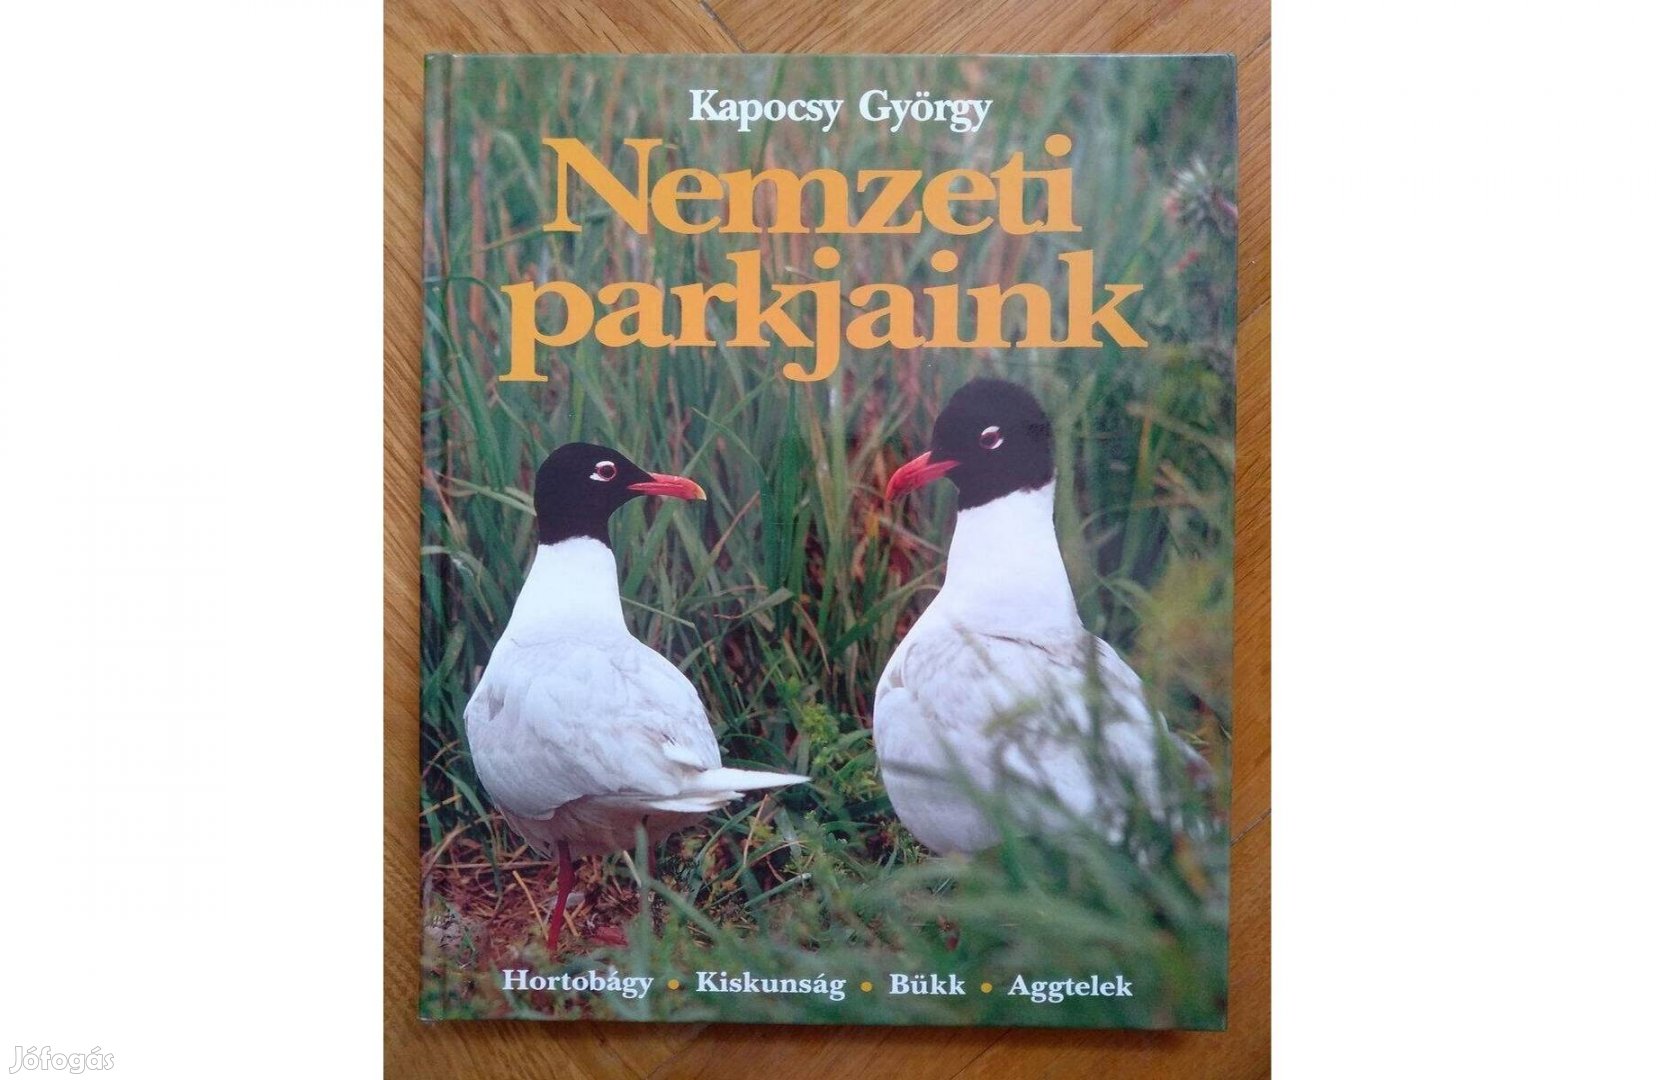 Kapocsy György Nemzeti parkjaink gyönyörű fotókkal, ajándéknak könyv